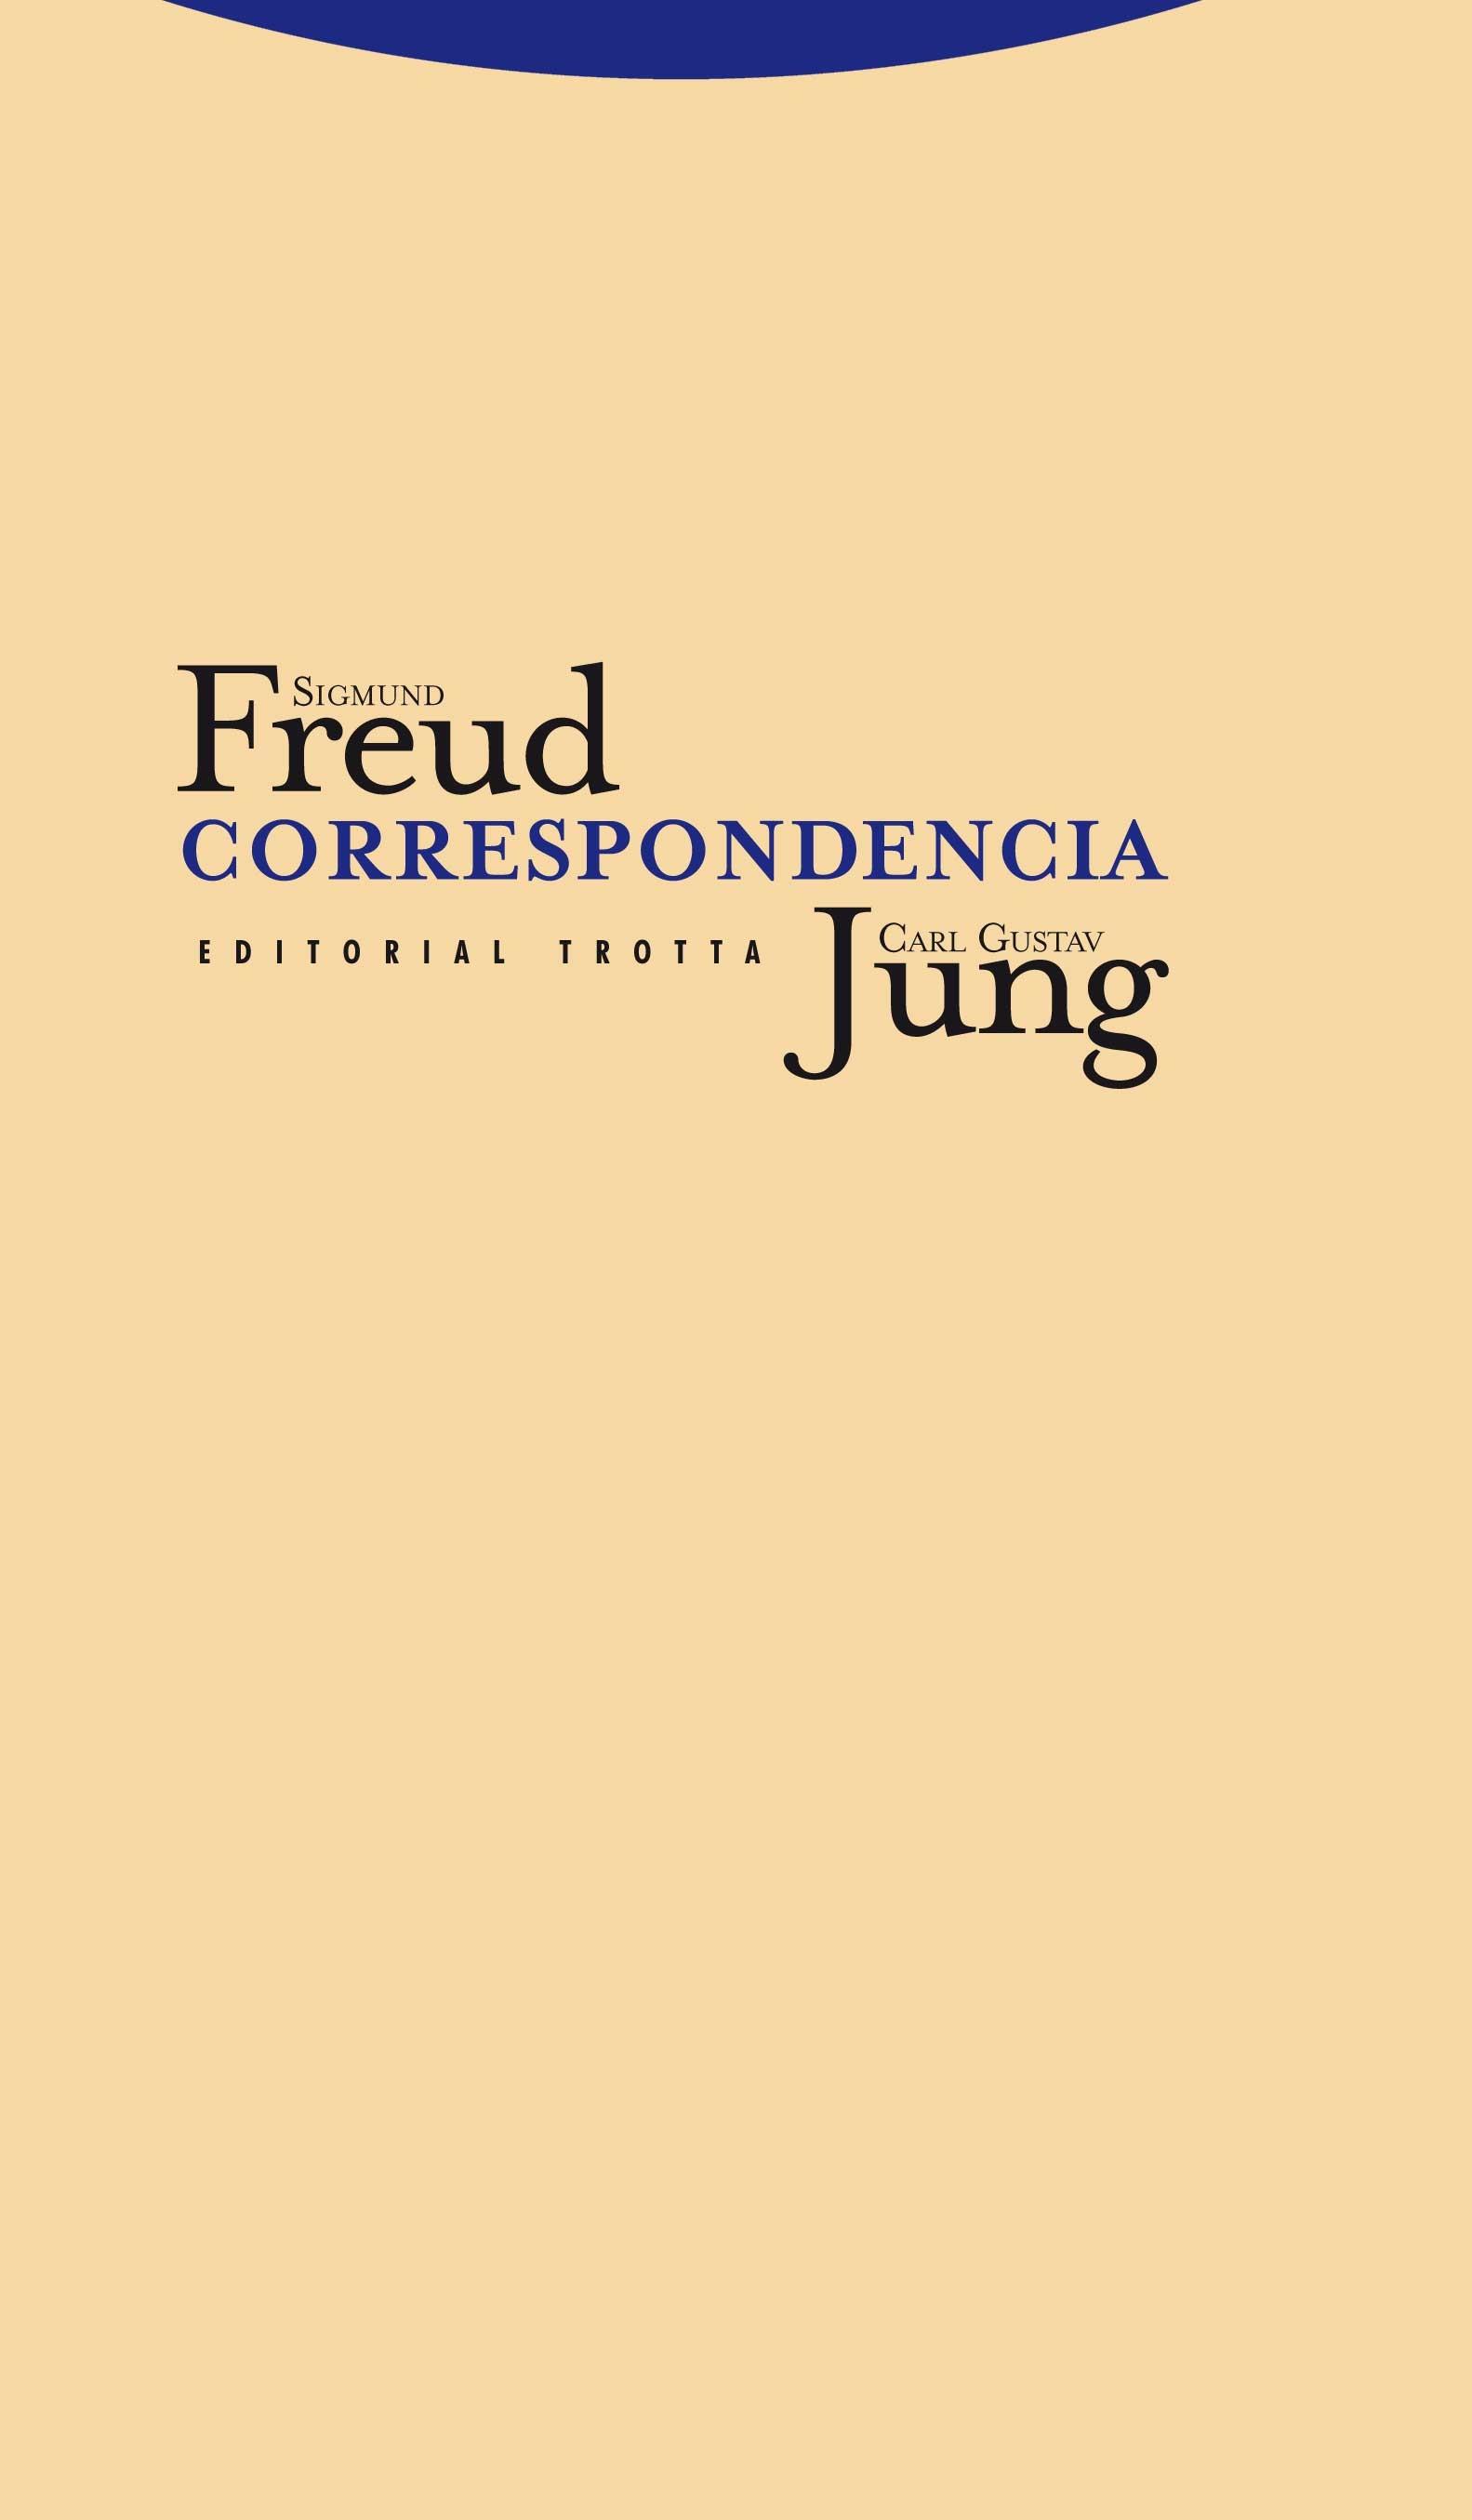 Sigmund Freud y Carl Gustav Jung: Correspondencia. 